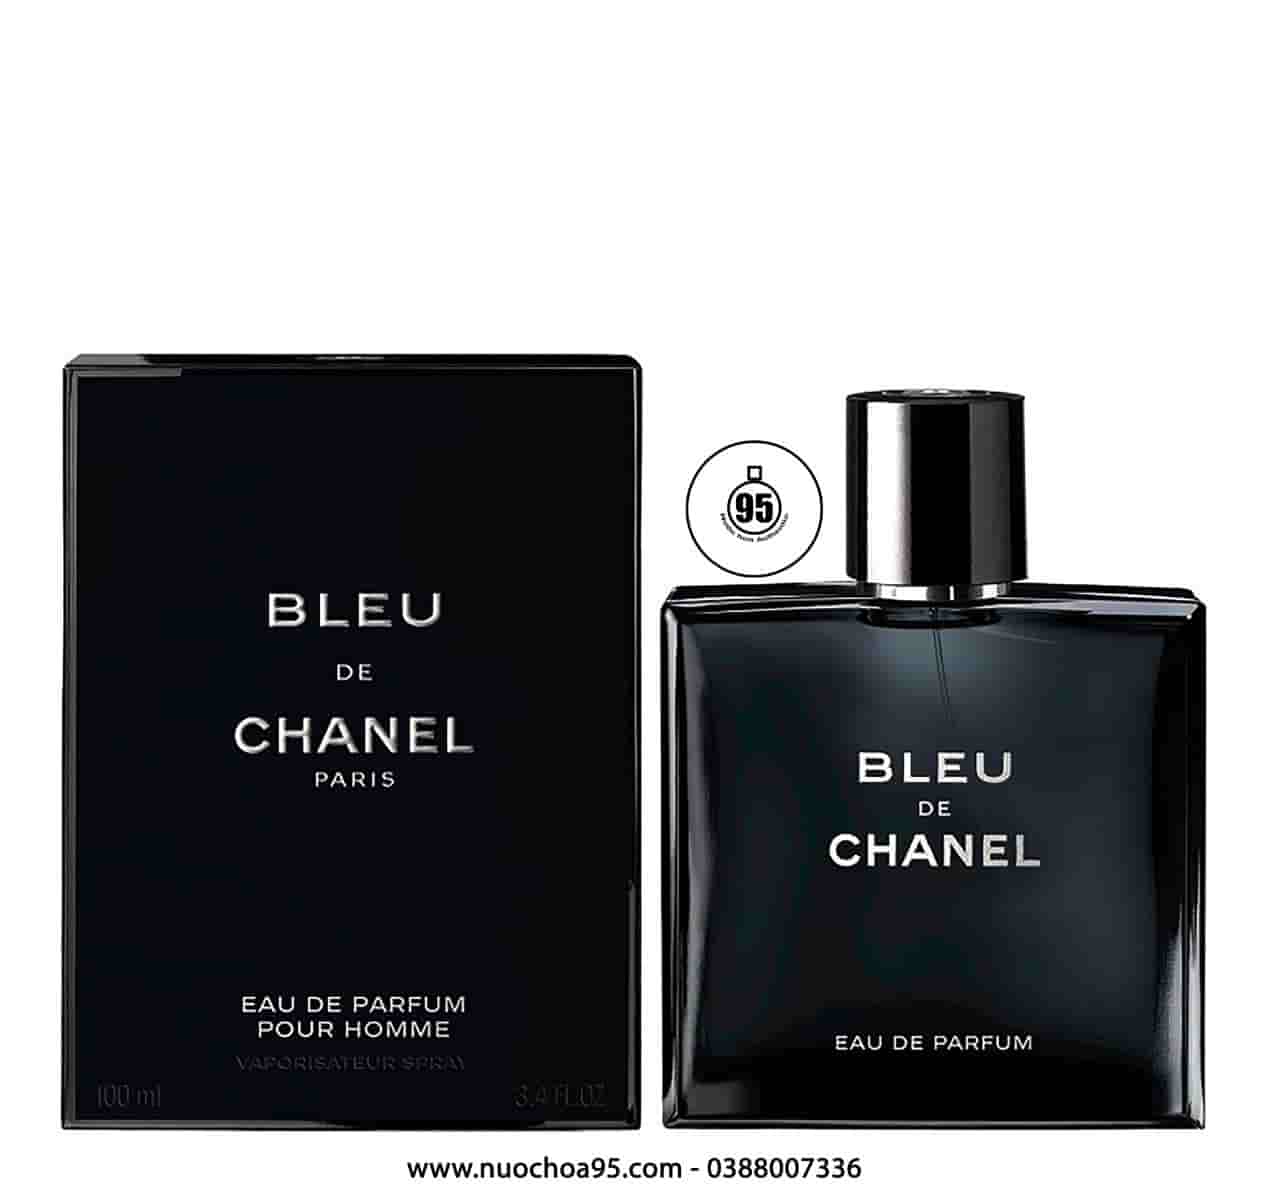 REVIEW Nước hoa Chanel Chance Pháp lên mùi như thế nào Giá bao nhiêu   XACHTAYNHATNET